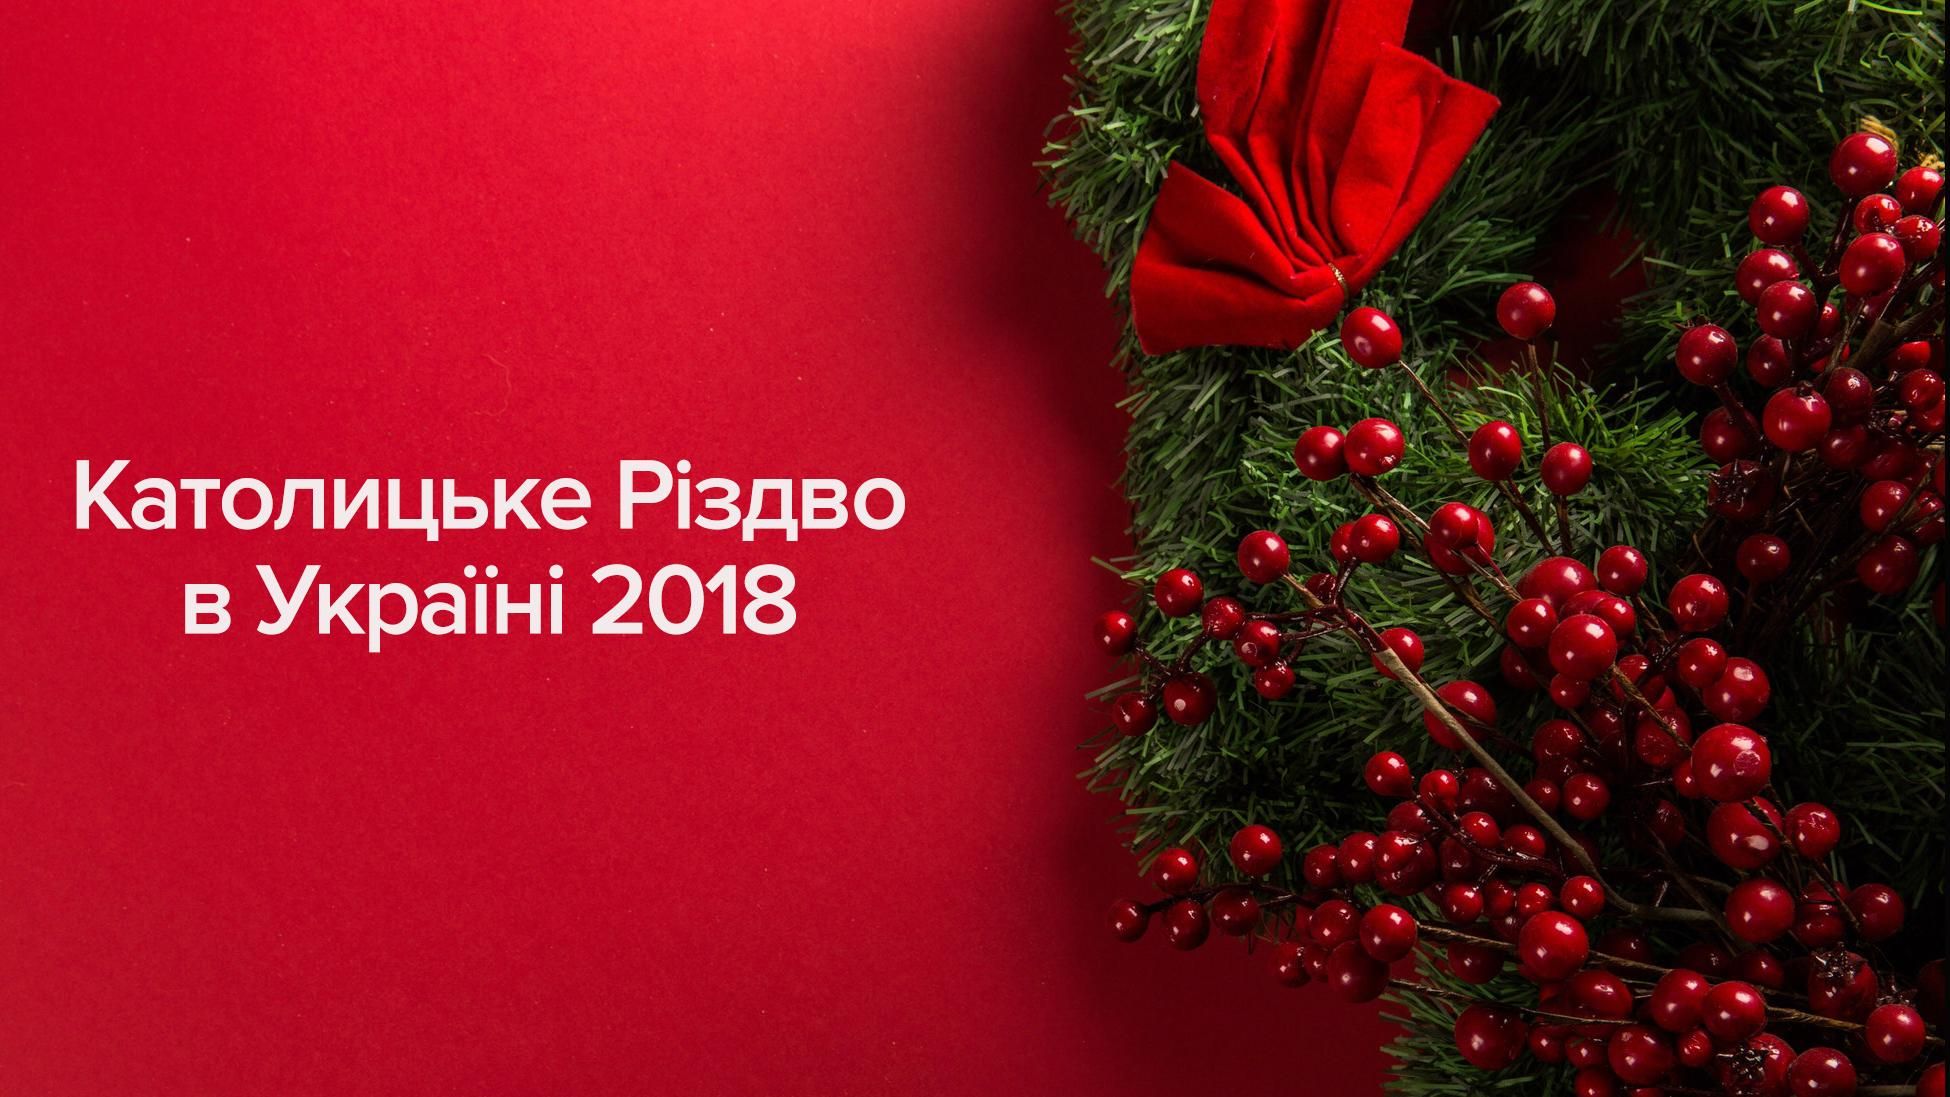 Католицьке Різдво 2018 вихідний в Україні - дата свята в Україні